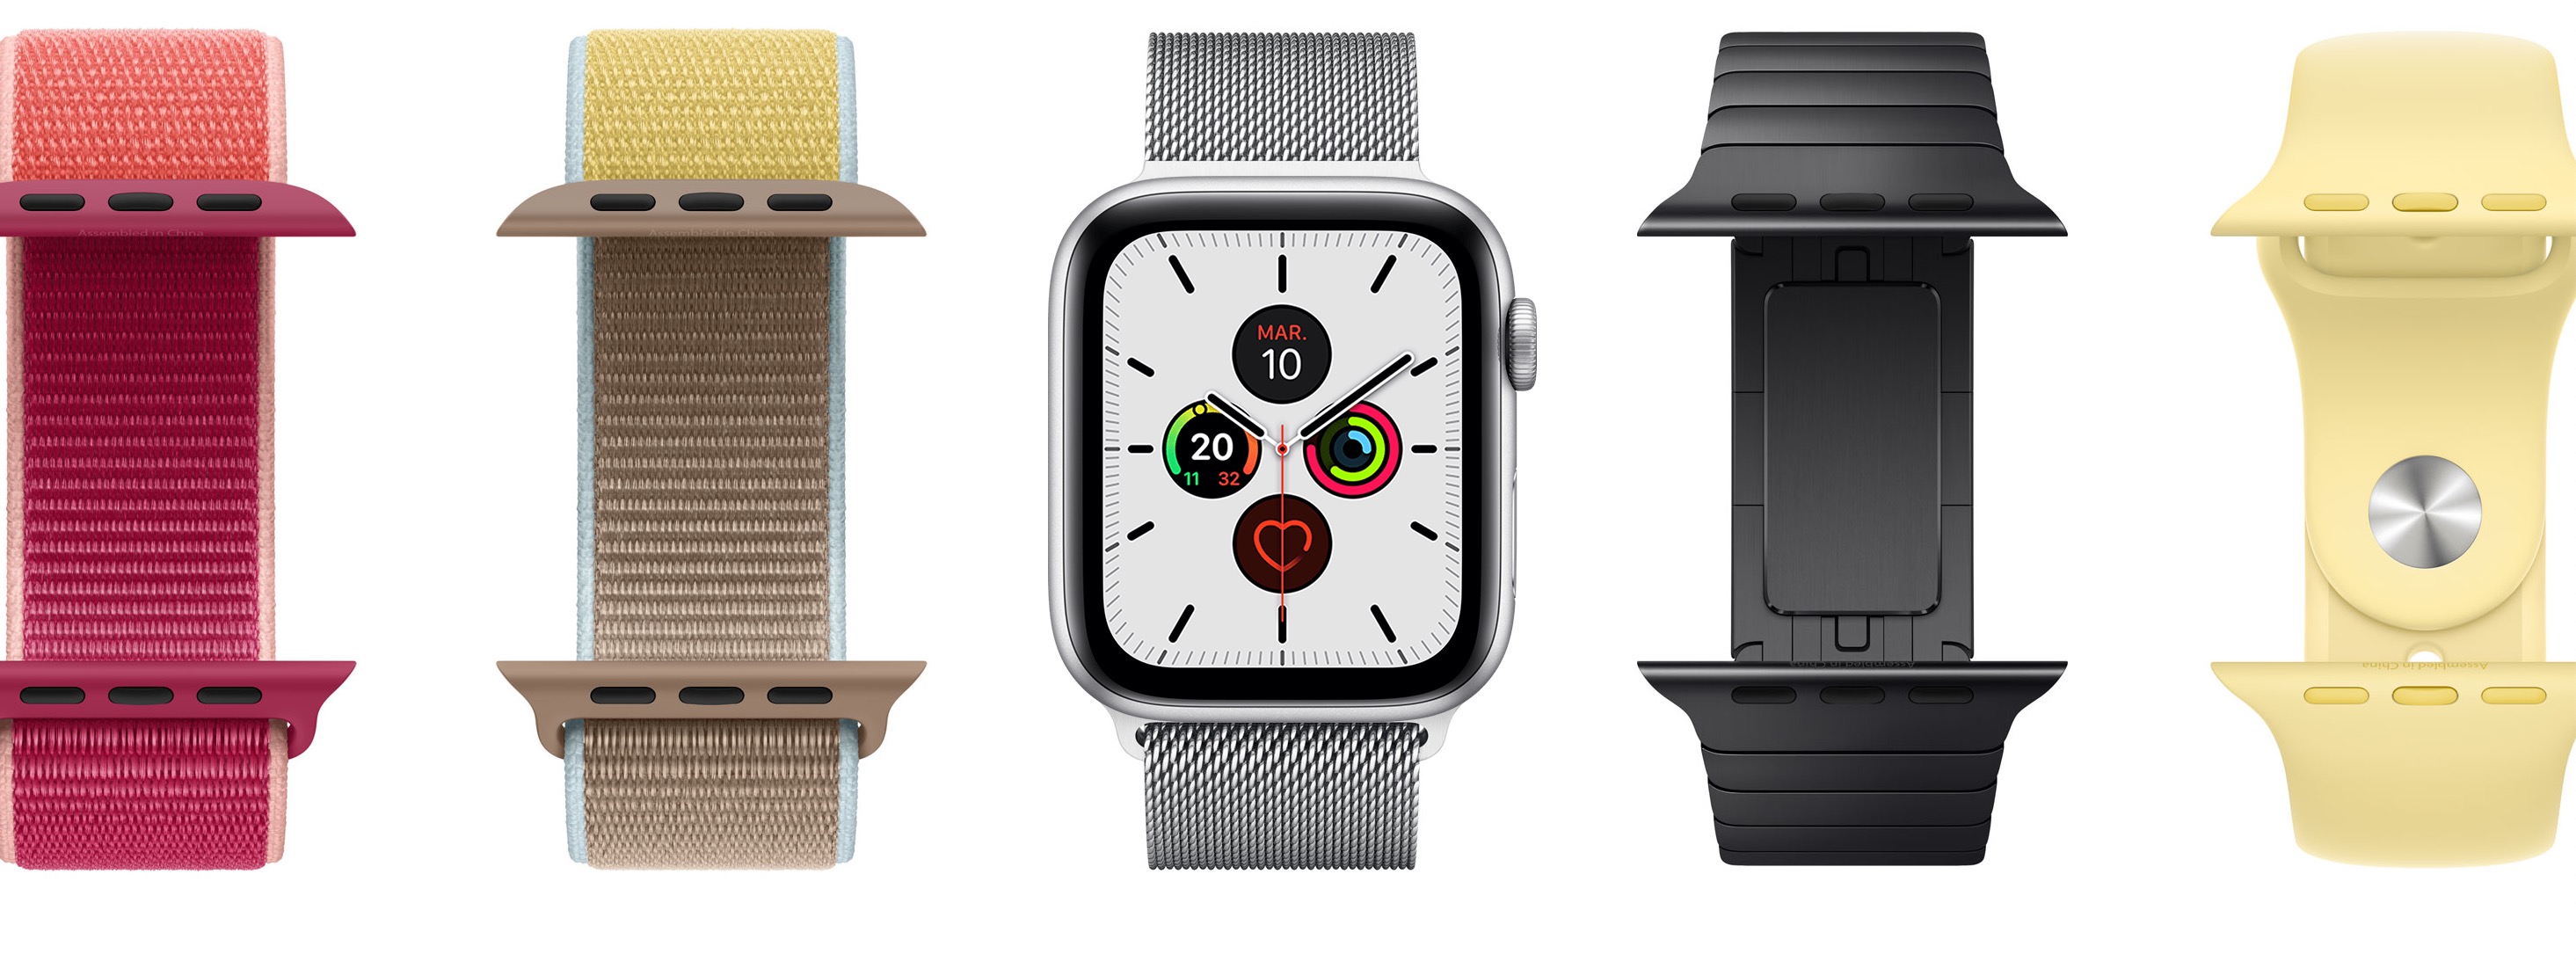 Une Apple Watch SE avec le processeur de la Series 5 et le design de la Series 4 pourrait arriver dès la semaine prochaine